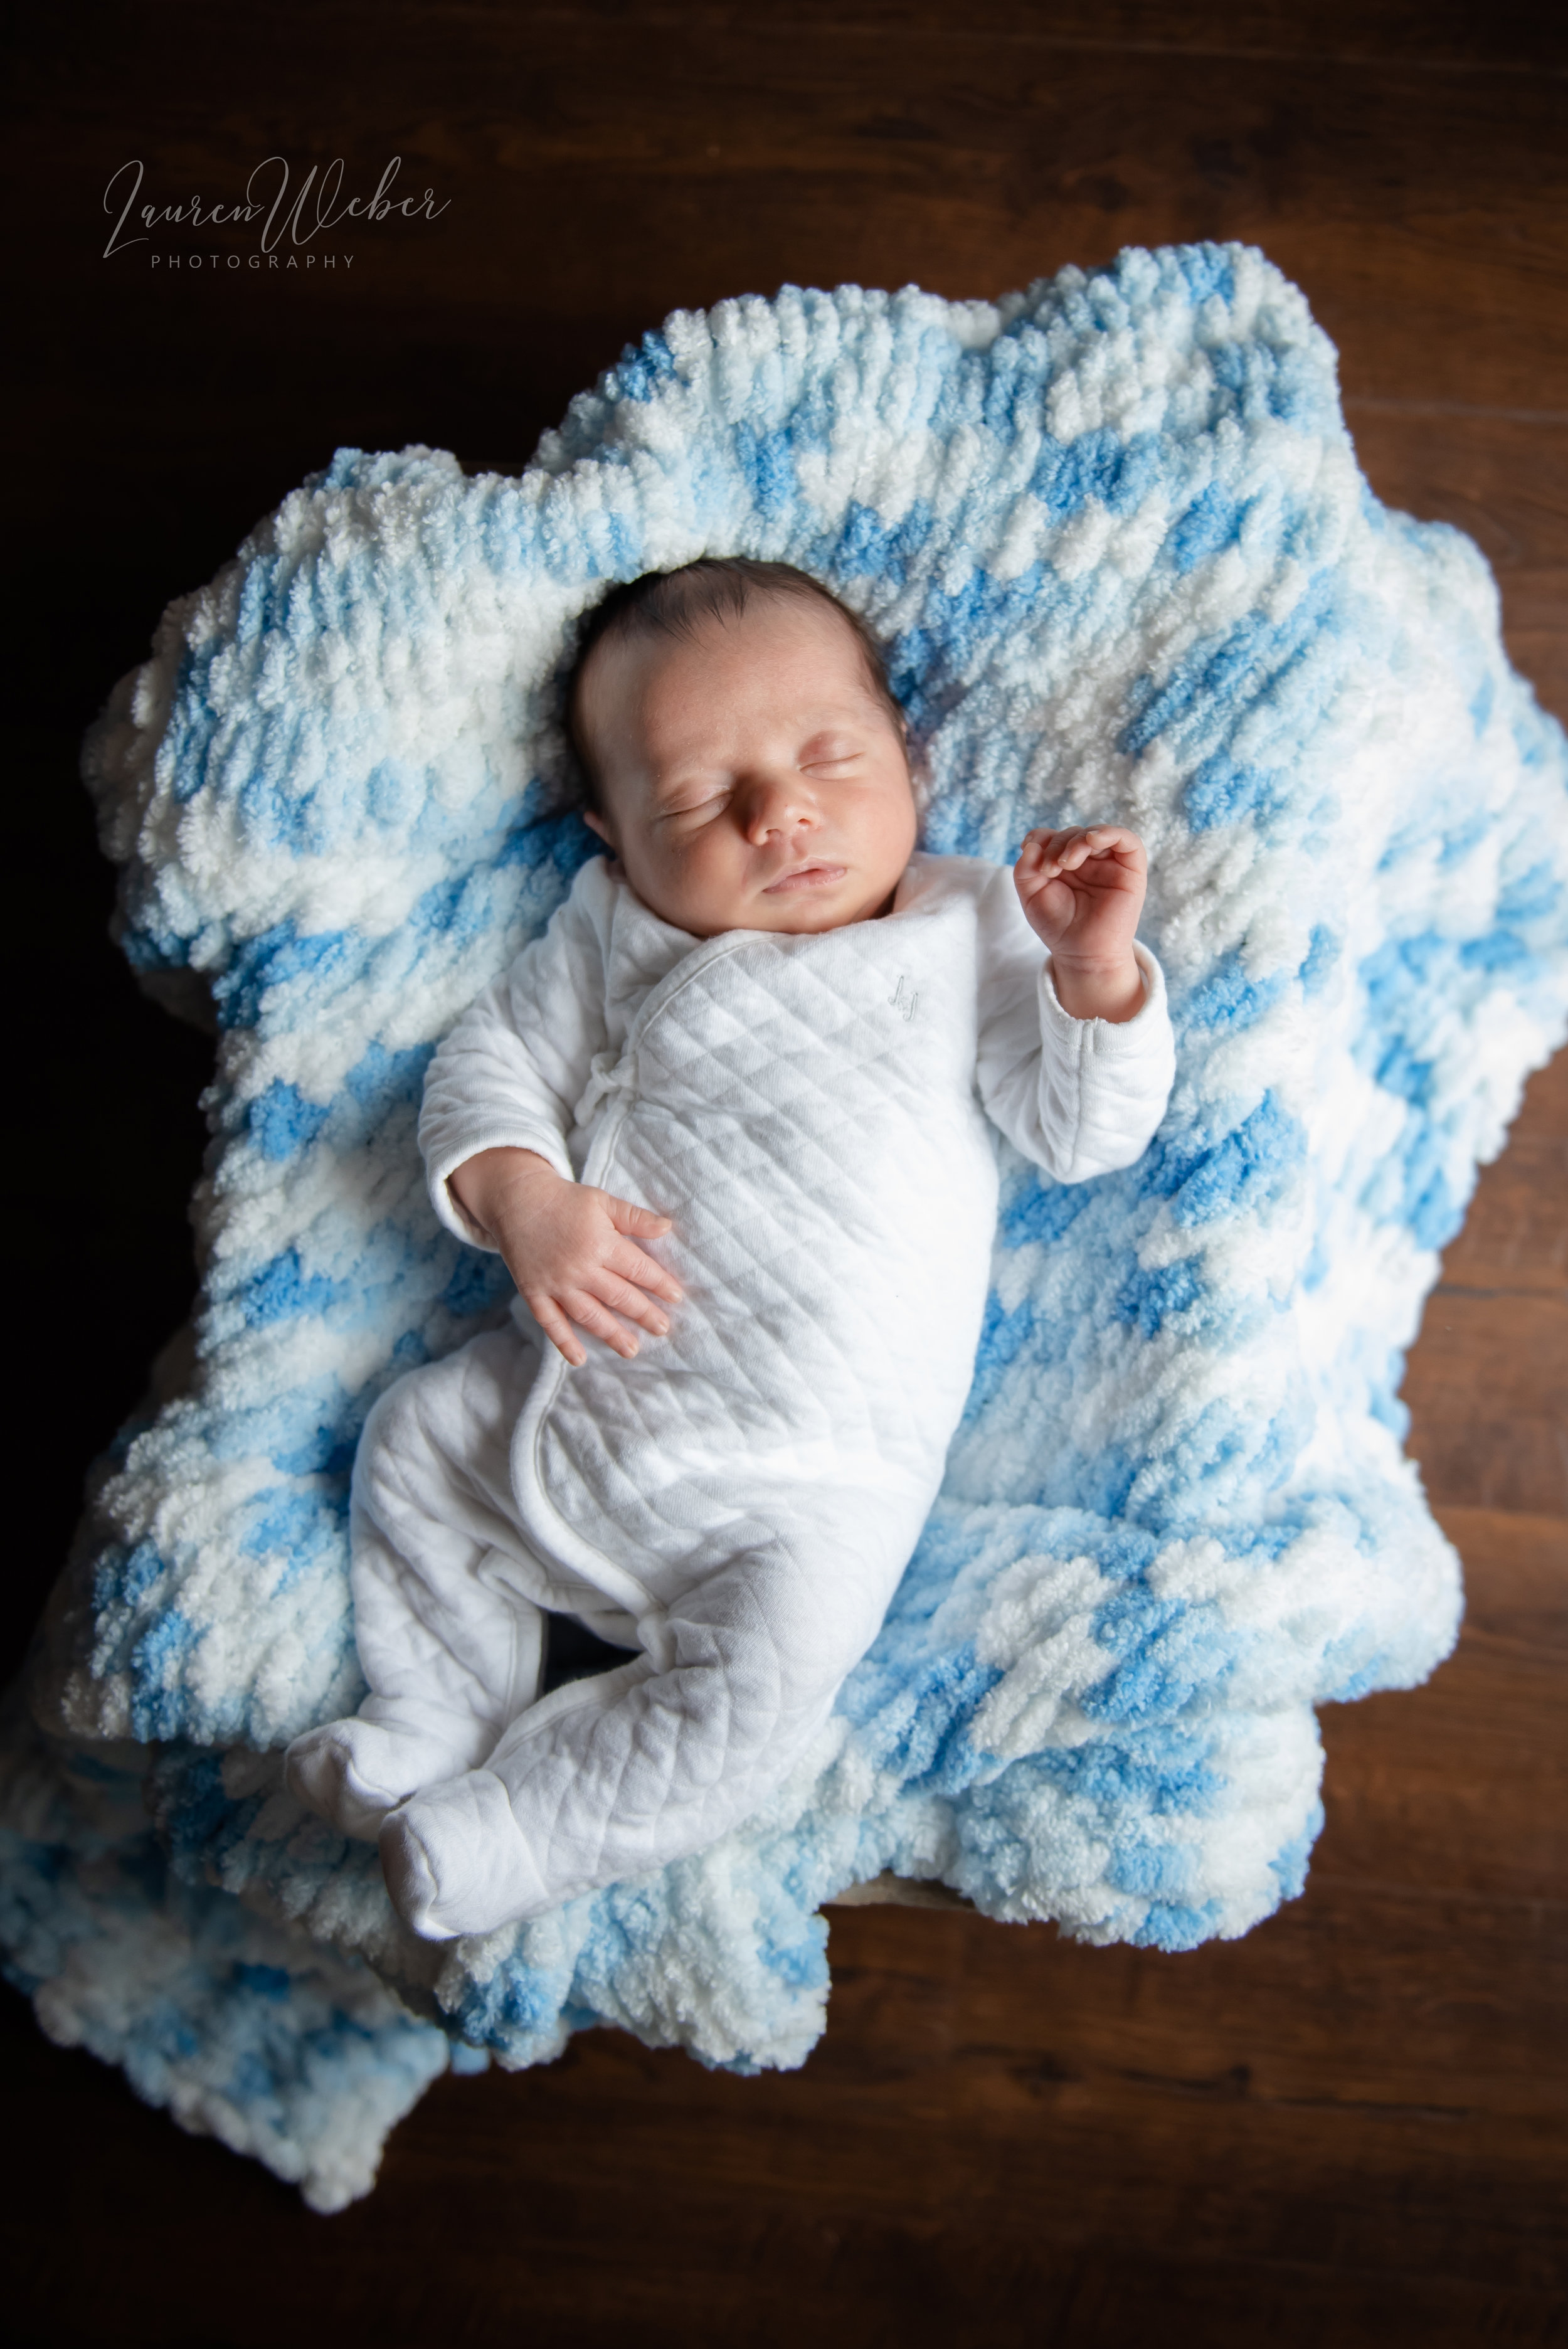 Baby Stanley — Lauren Weber Photography